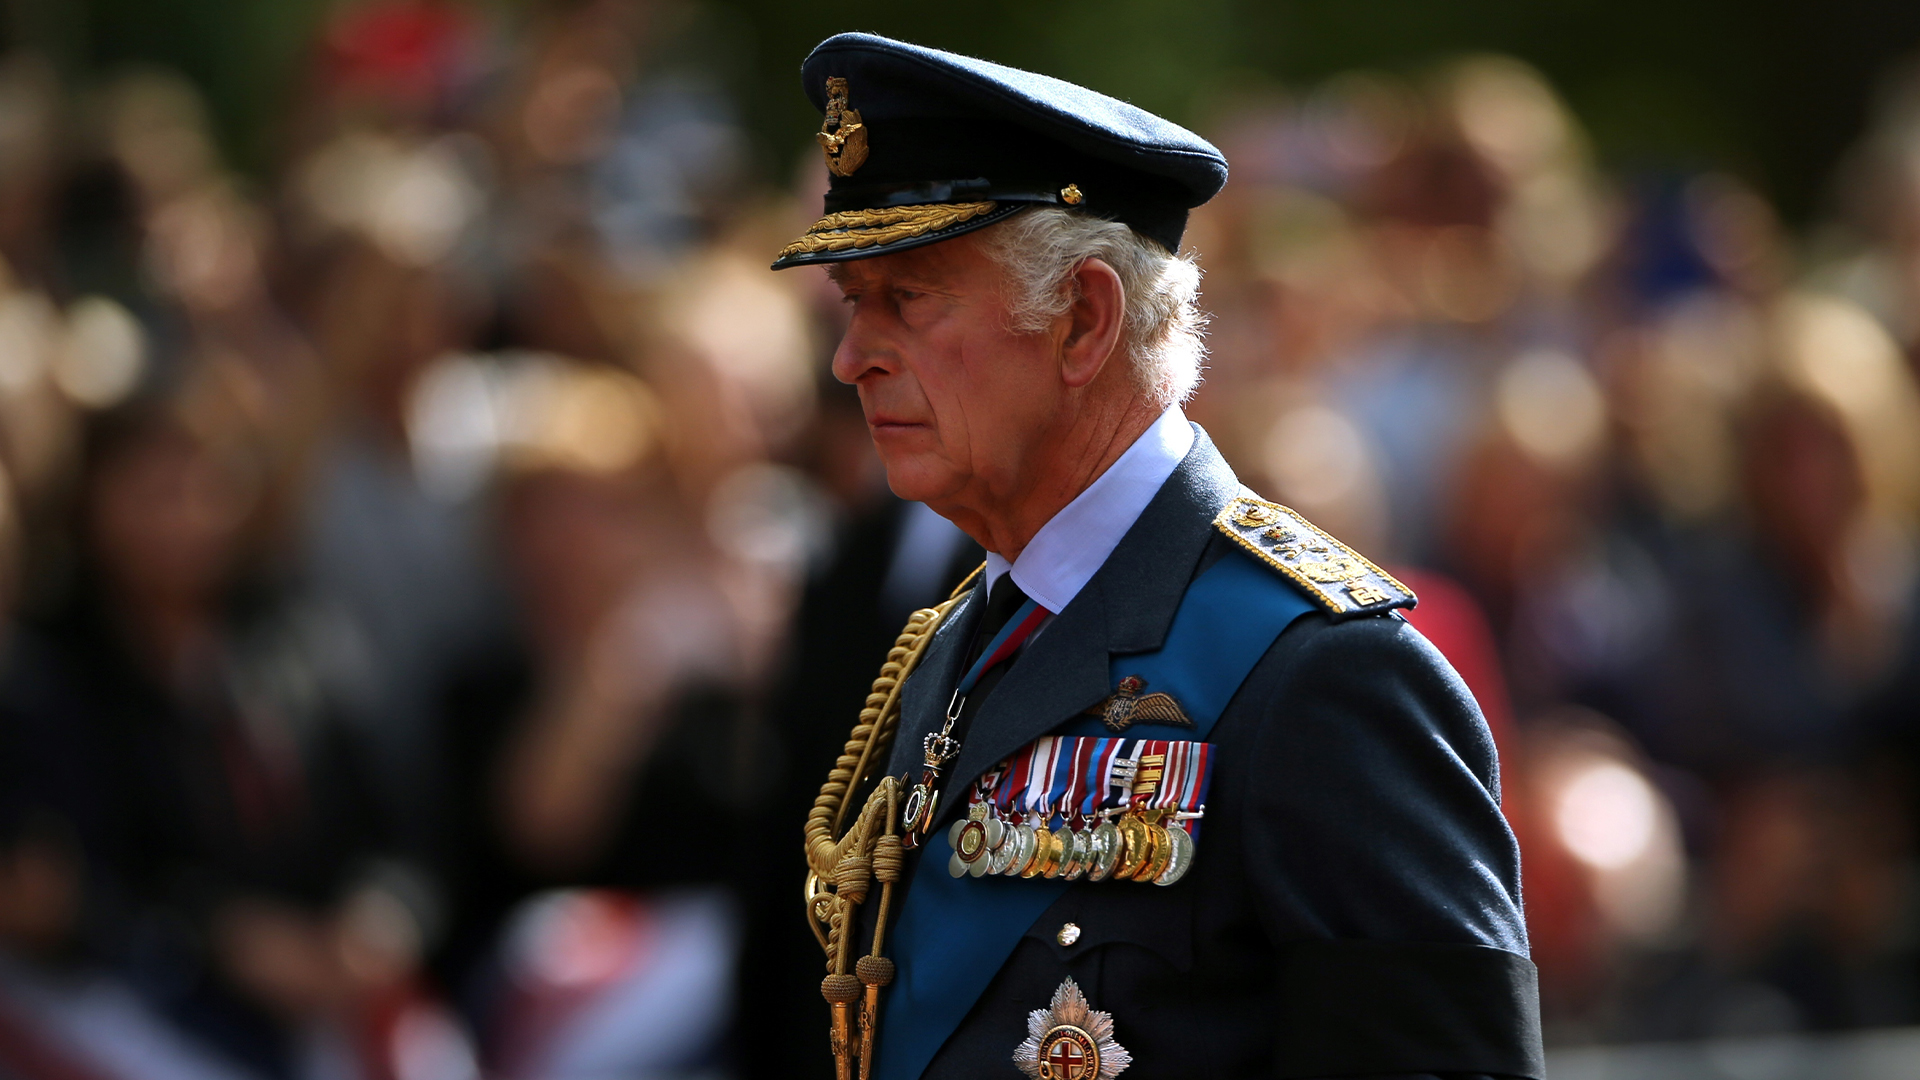 Les membres du personnel domestique ayant servi le roi Charles III lorsqu’il était héritier du trône britannique ont déjà été informés qu’ils seraient sur le point d'être congédiés.